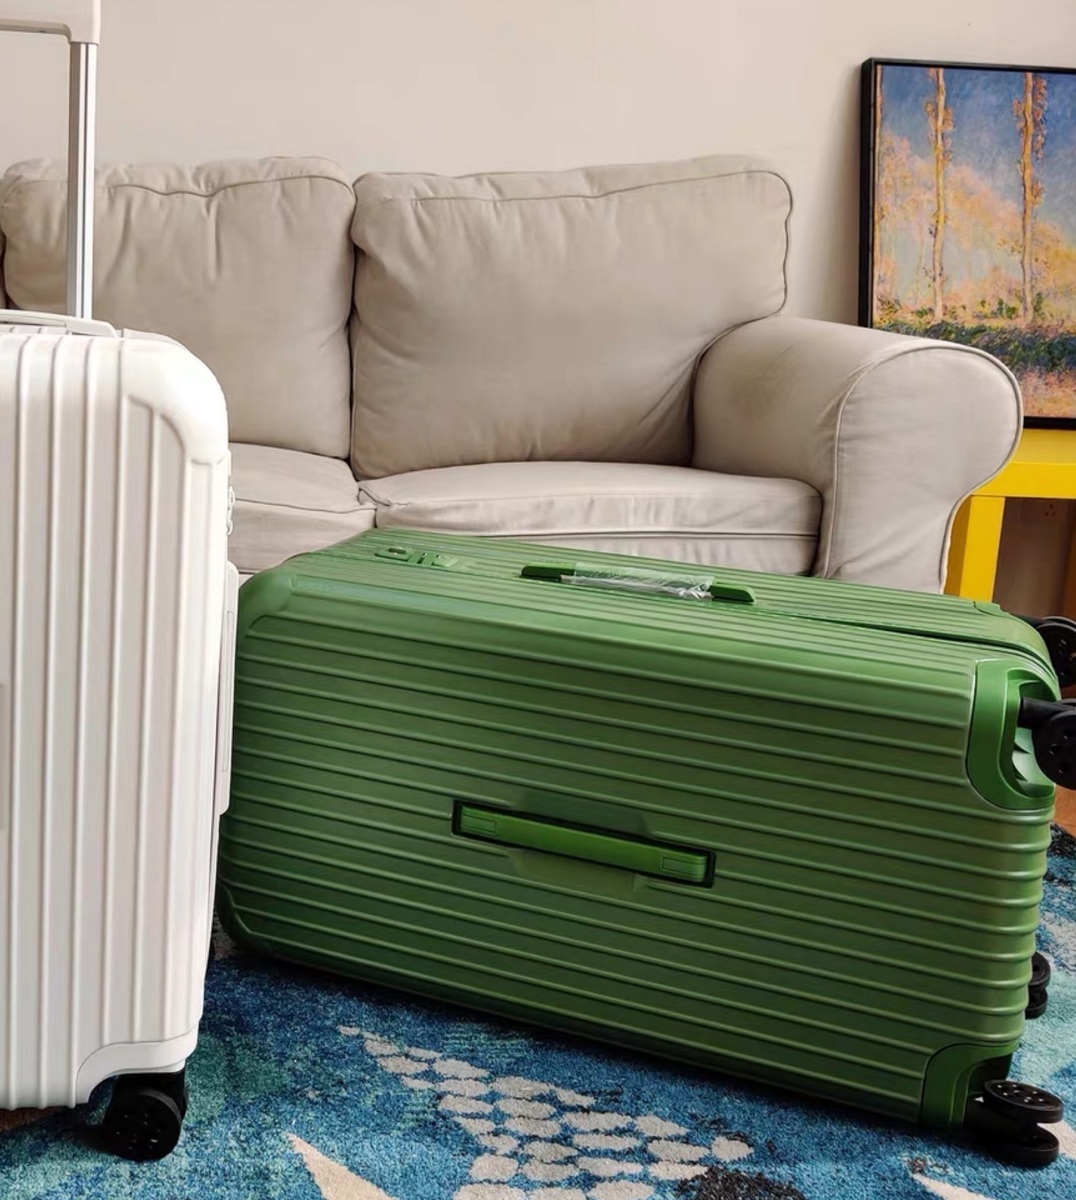 世界有名な スーツケース 8輪 超軽量大容量 旅行 キャリーケース ファスナー式 XＬ グリーン ニューデザイン TSAロック搭載 -  スーツケース、トランク一般